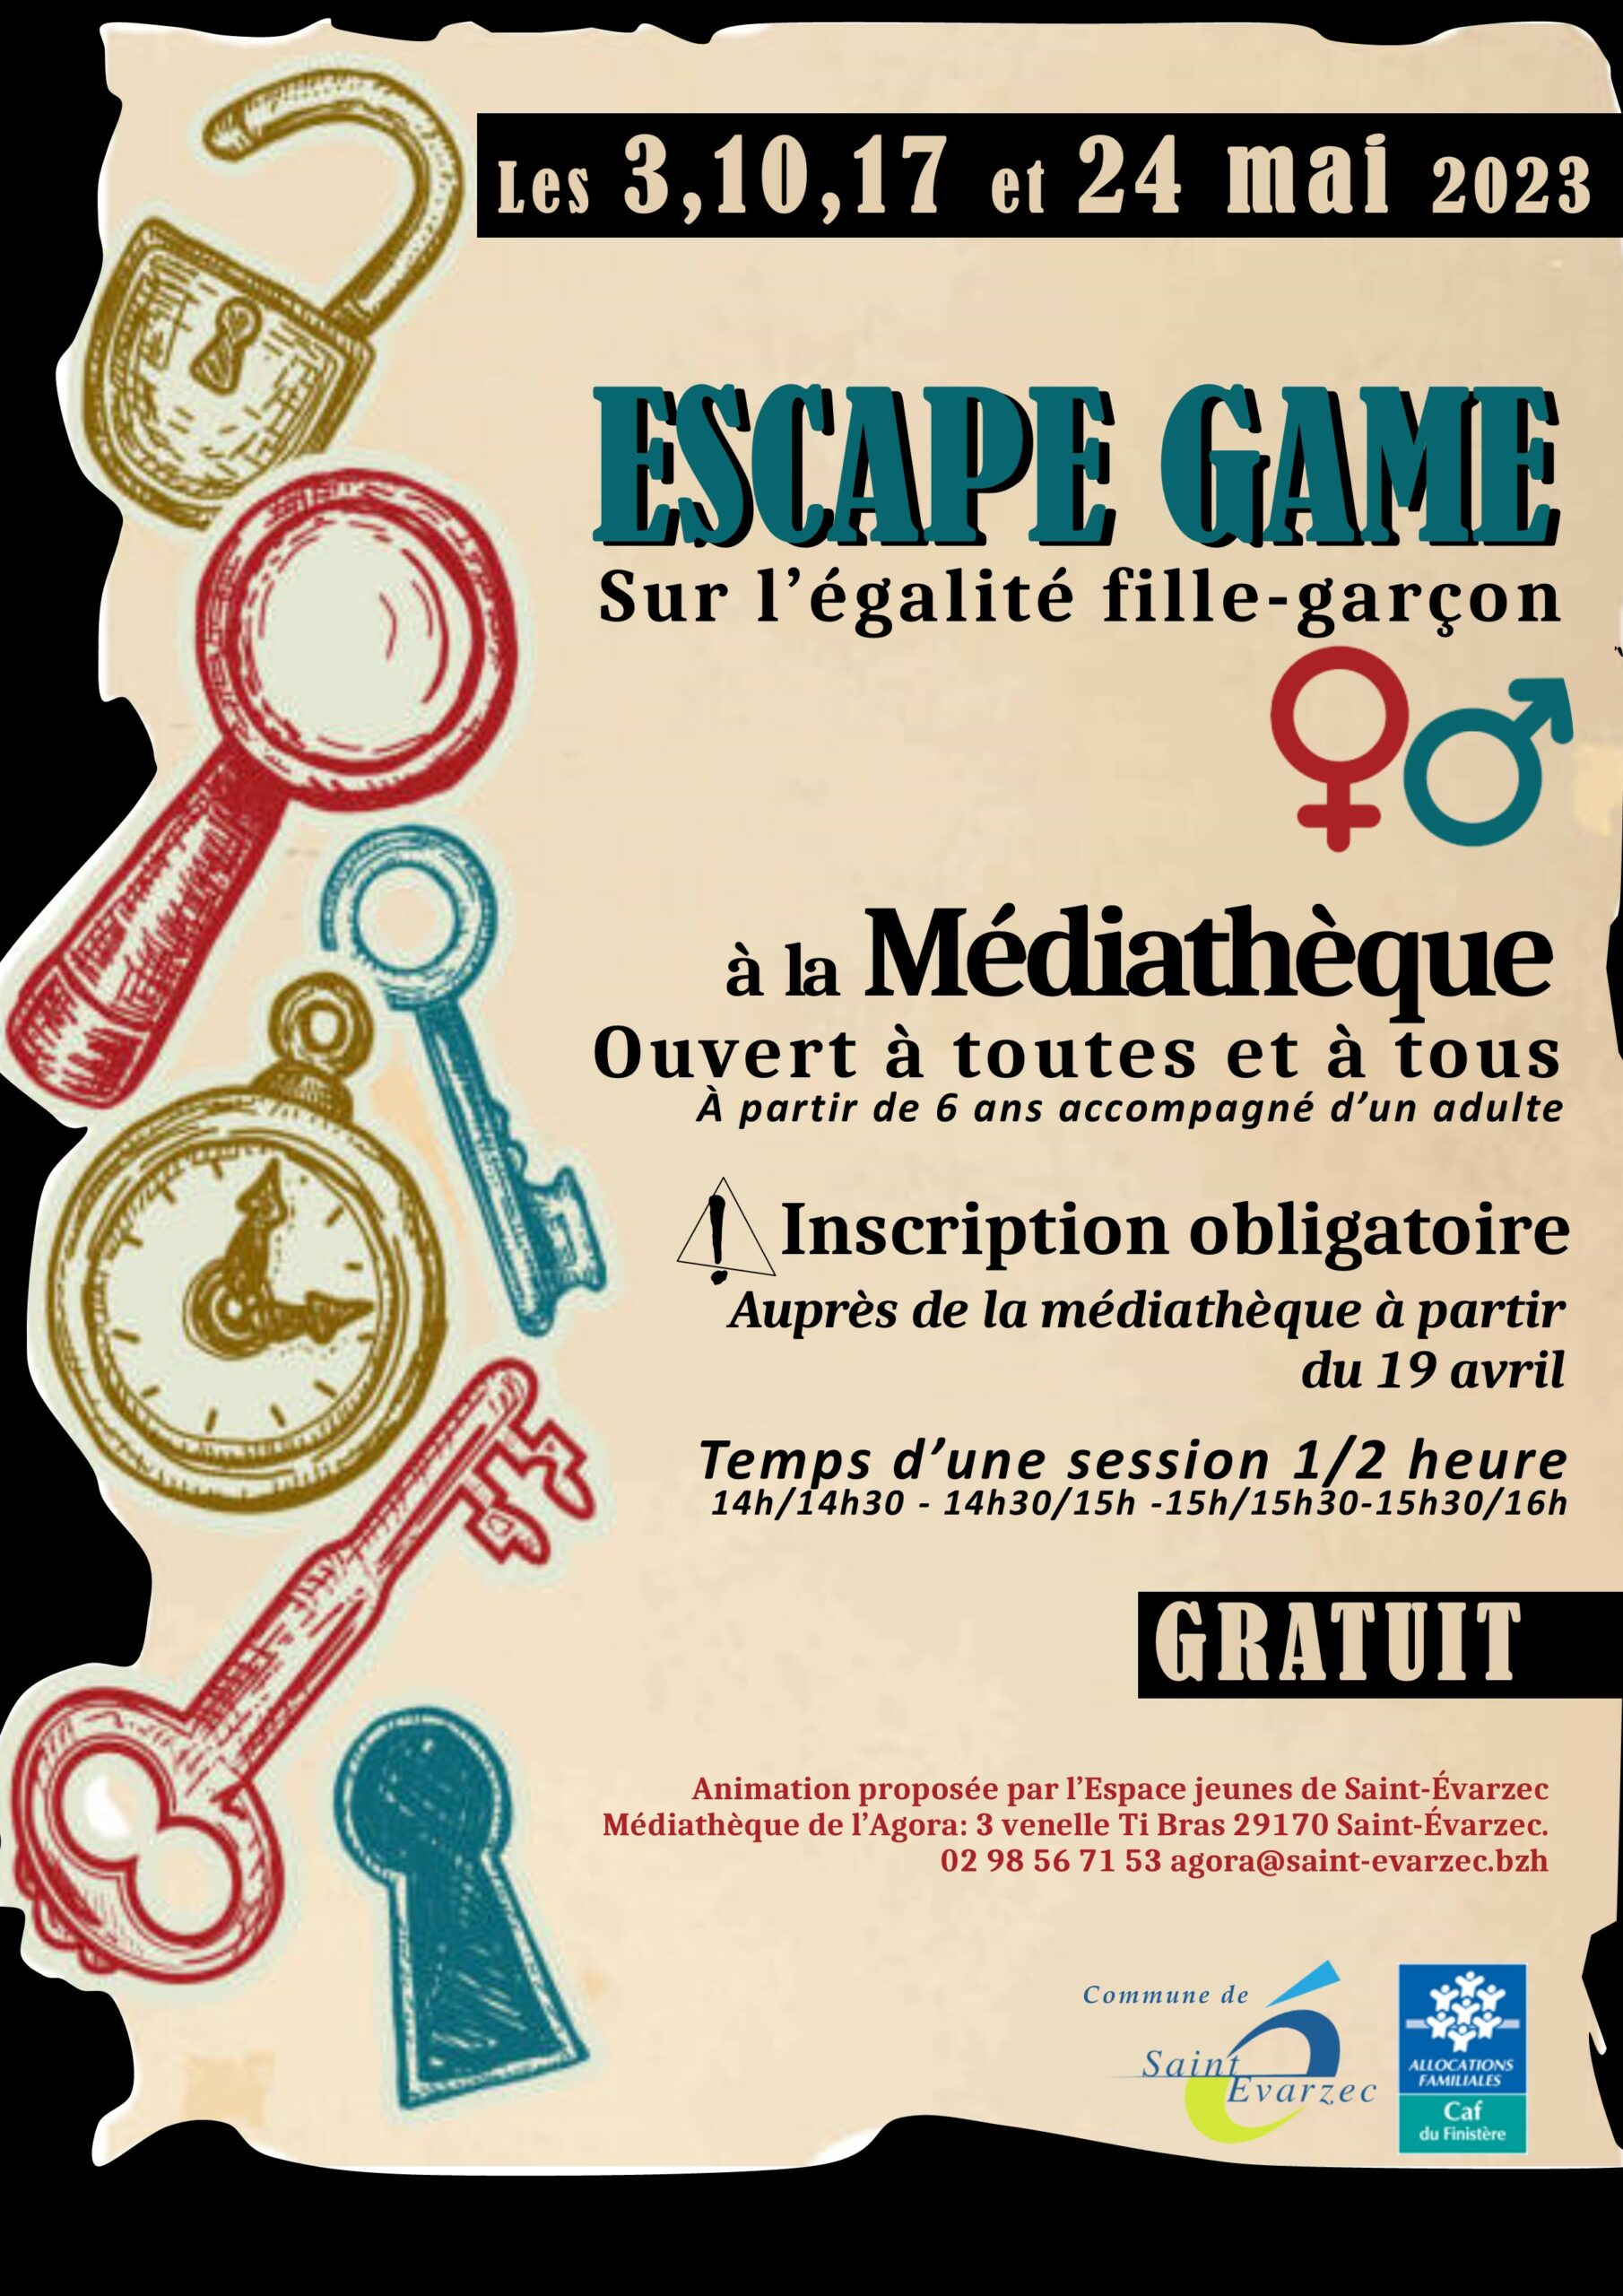 Escape game à la médiathèque !!!